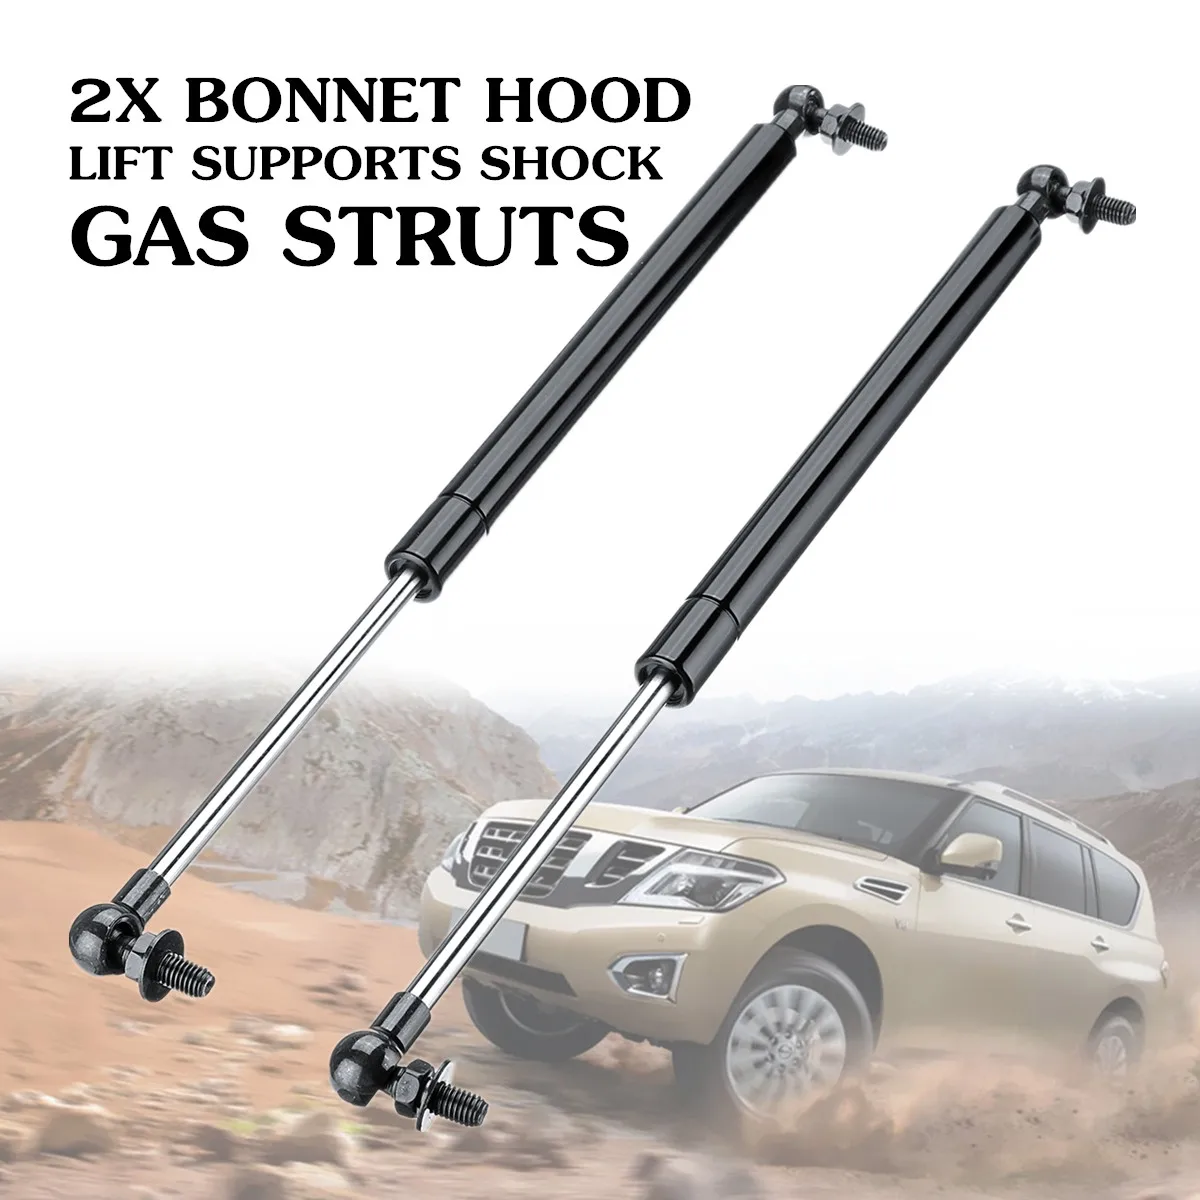 

2Pcs Bonnet Hood Lift Supports Shock Gas Struts for Nissan Patrol Y61 Y62 1997-2018 Steel 41cm Replacement Convenient Safe